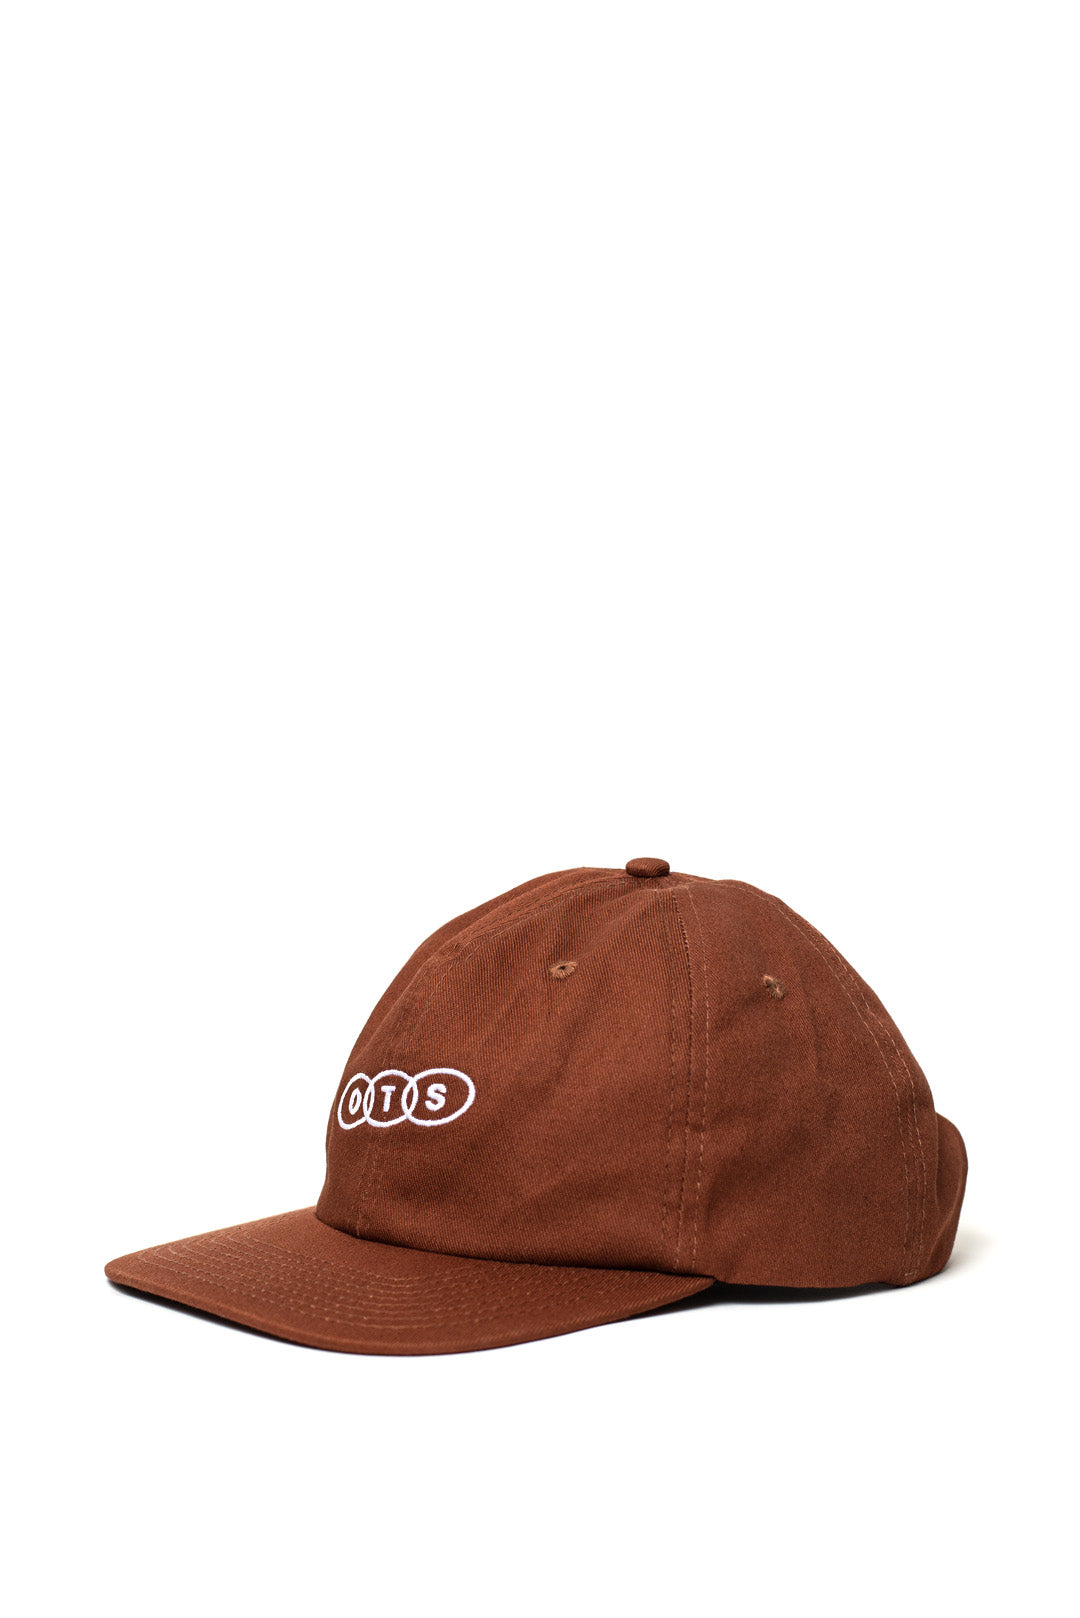 OTS Brown Cap